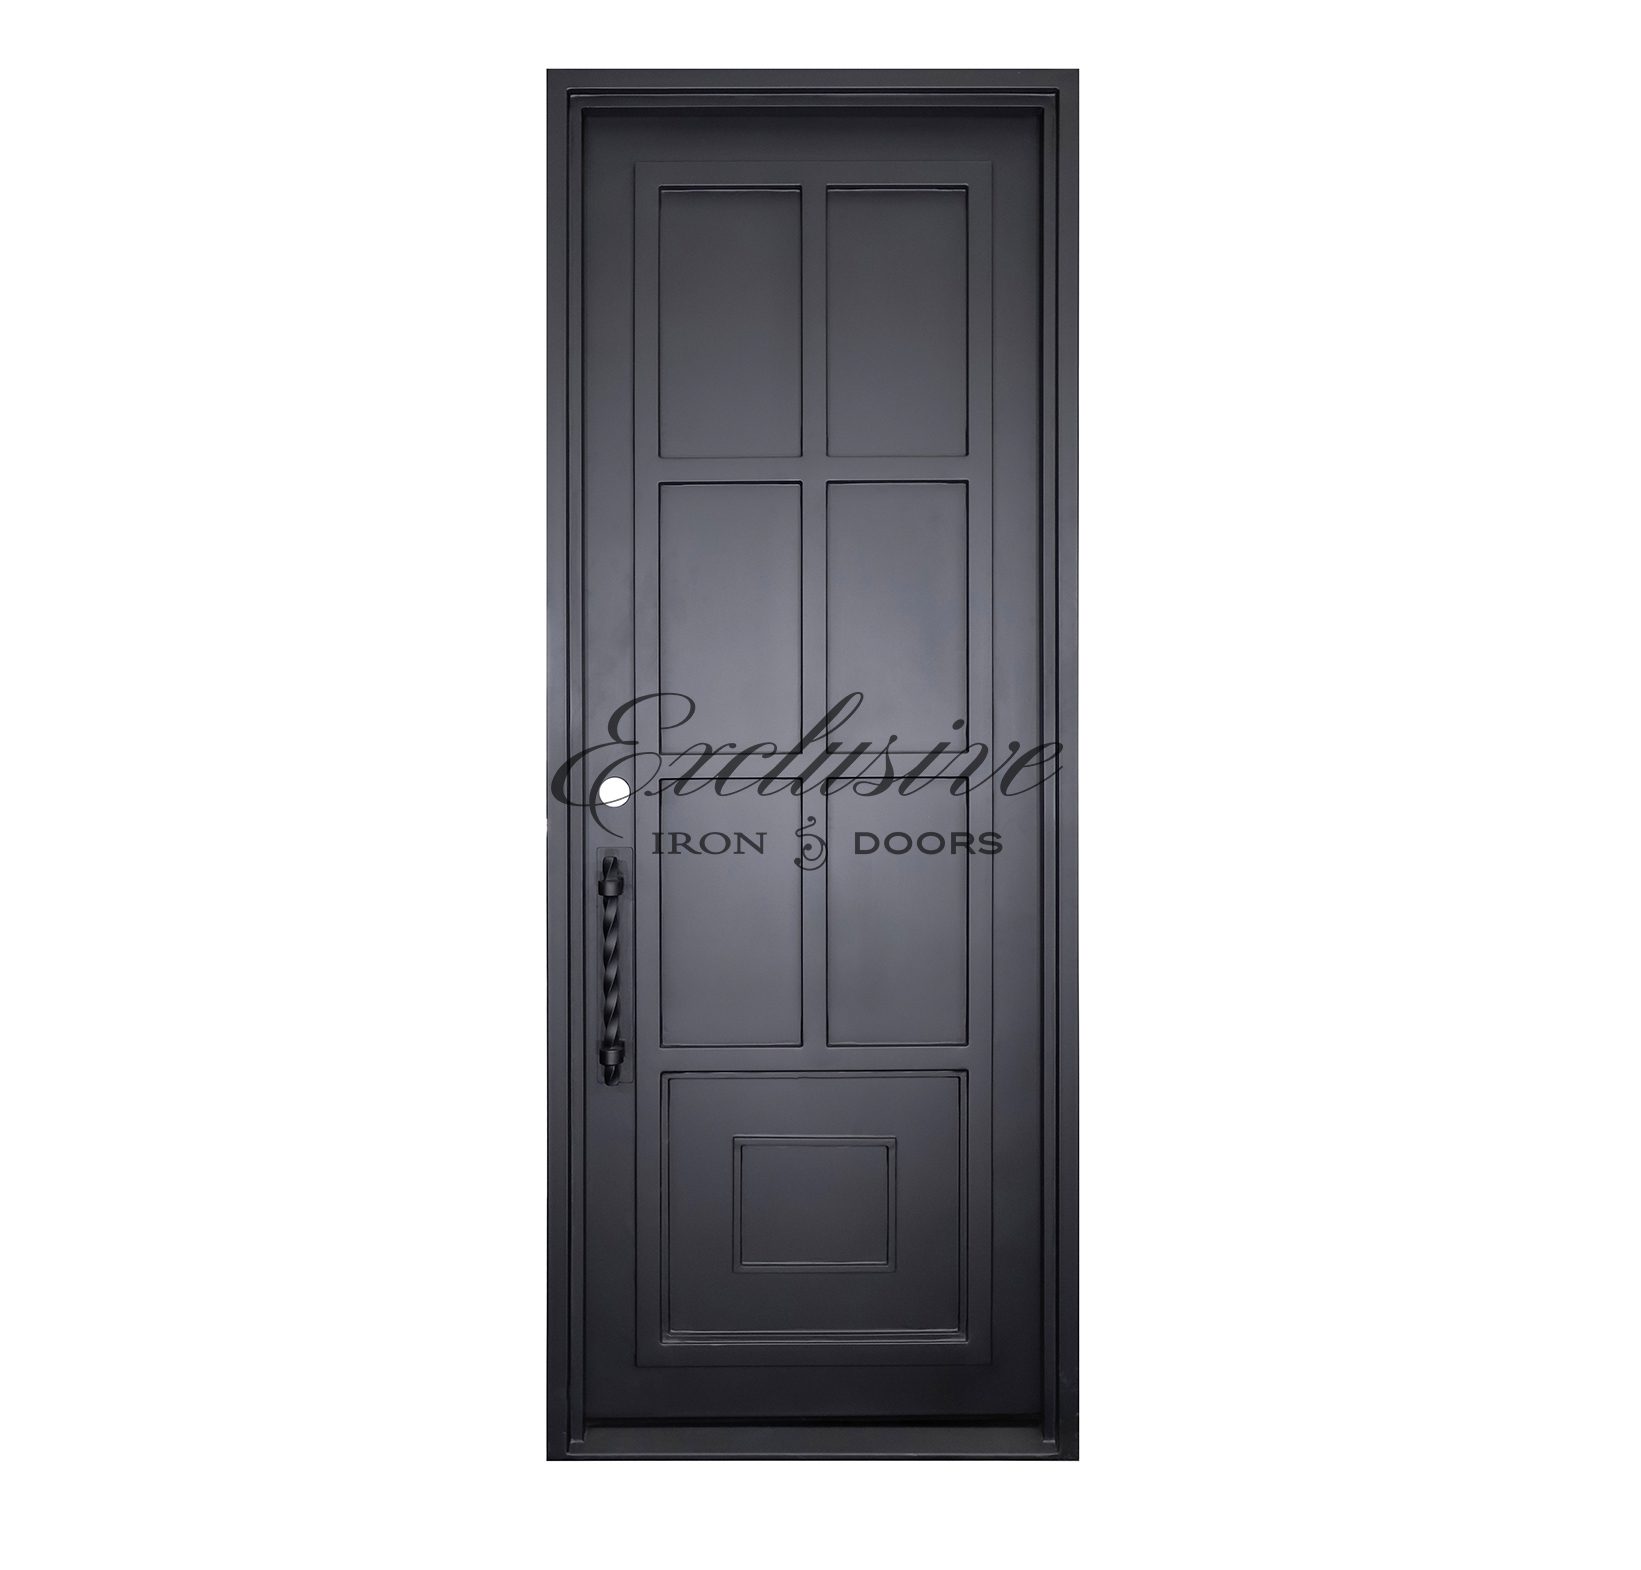 Solid Eleanor Custom Single Iron Door